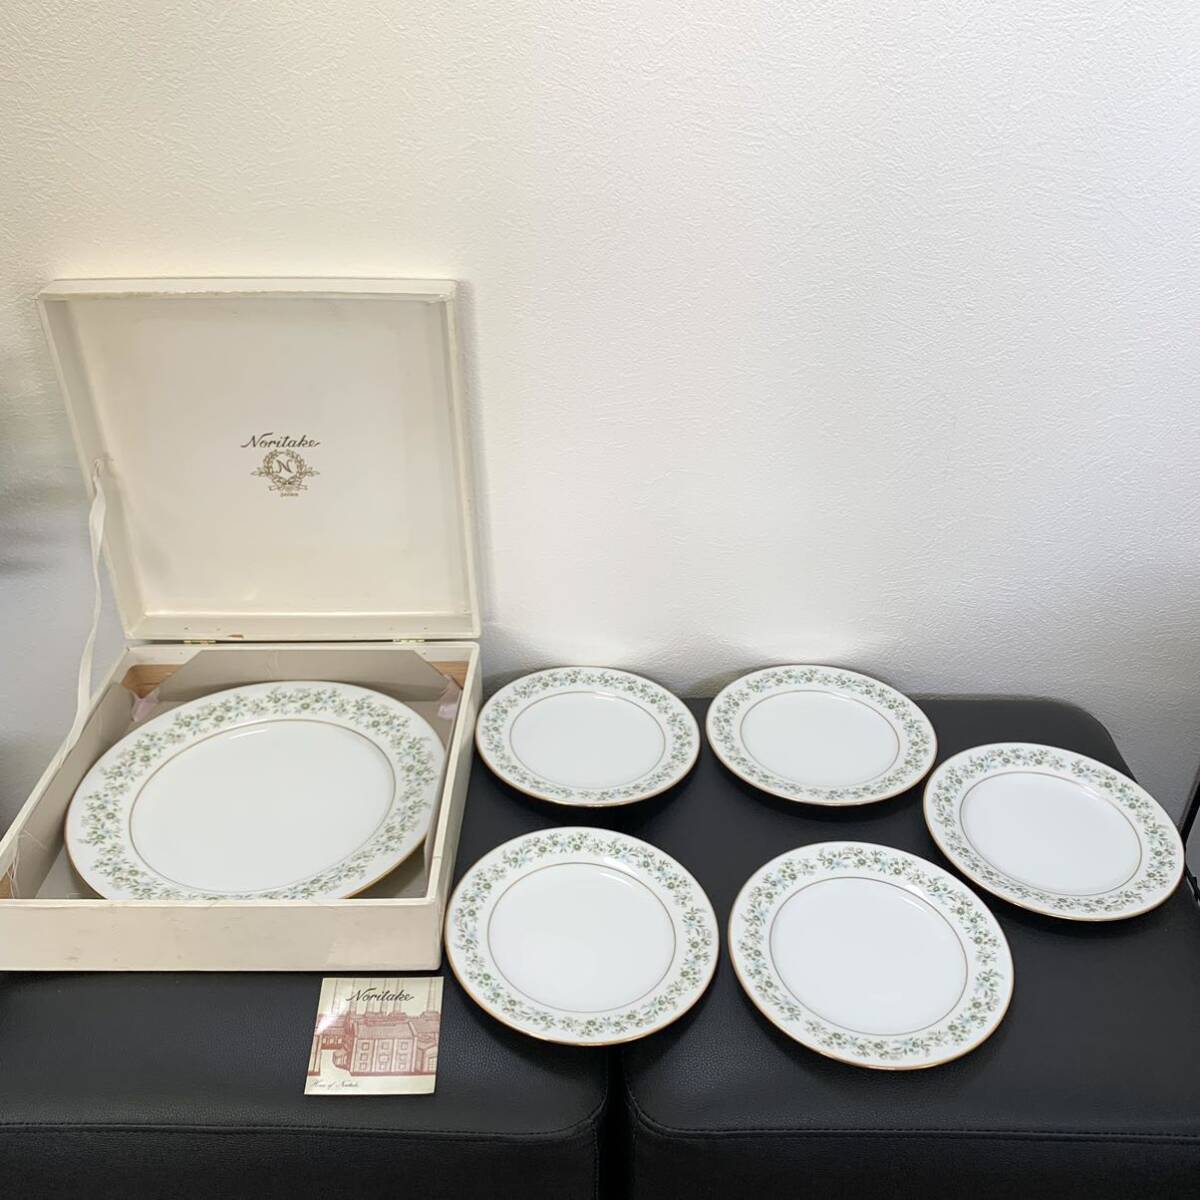 ノリタケ 6枚セット 小プレート5皿:17.8cm/大プレート1皿:26.8cm お皿 ホワイト 白 花柄 ブランド食器 Noritakeの画像1